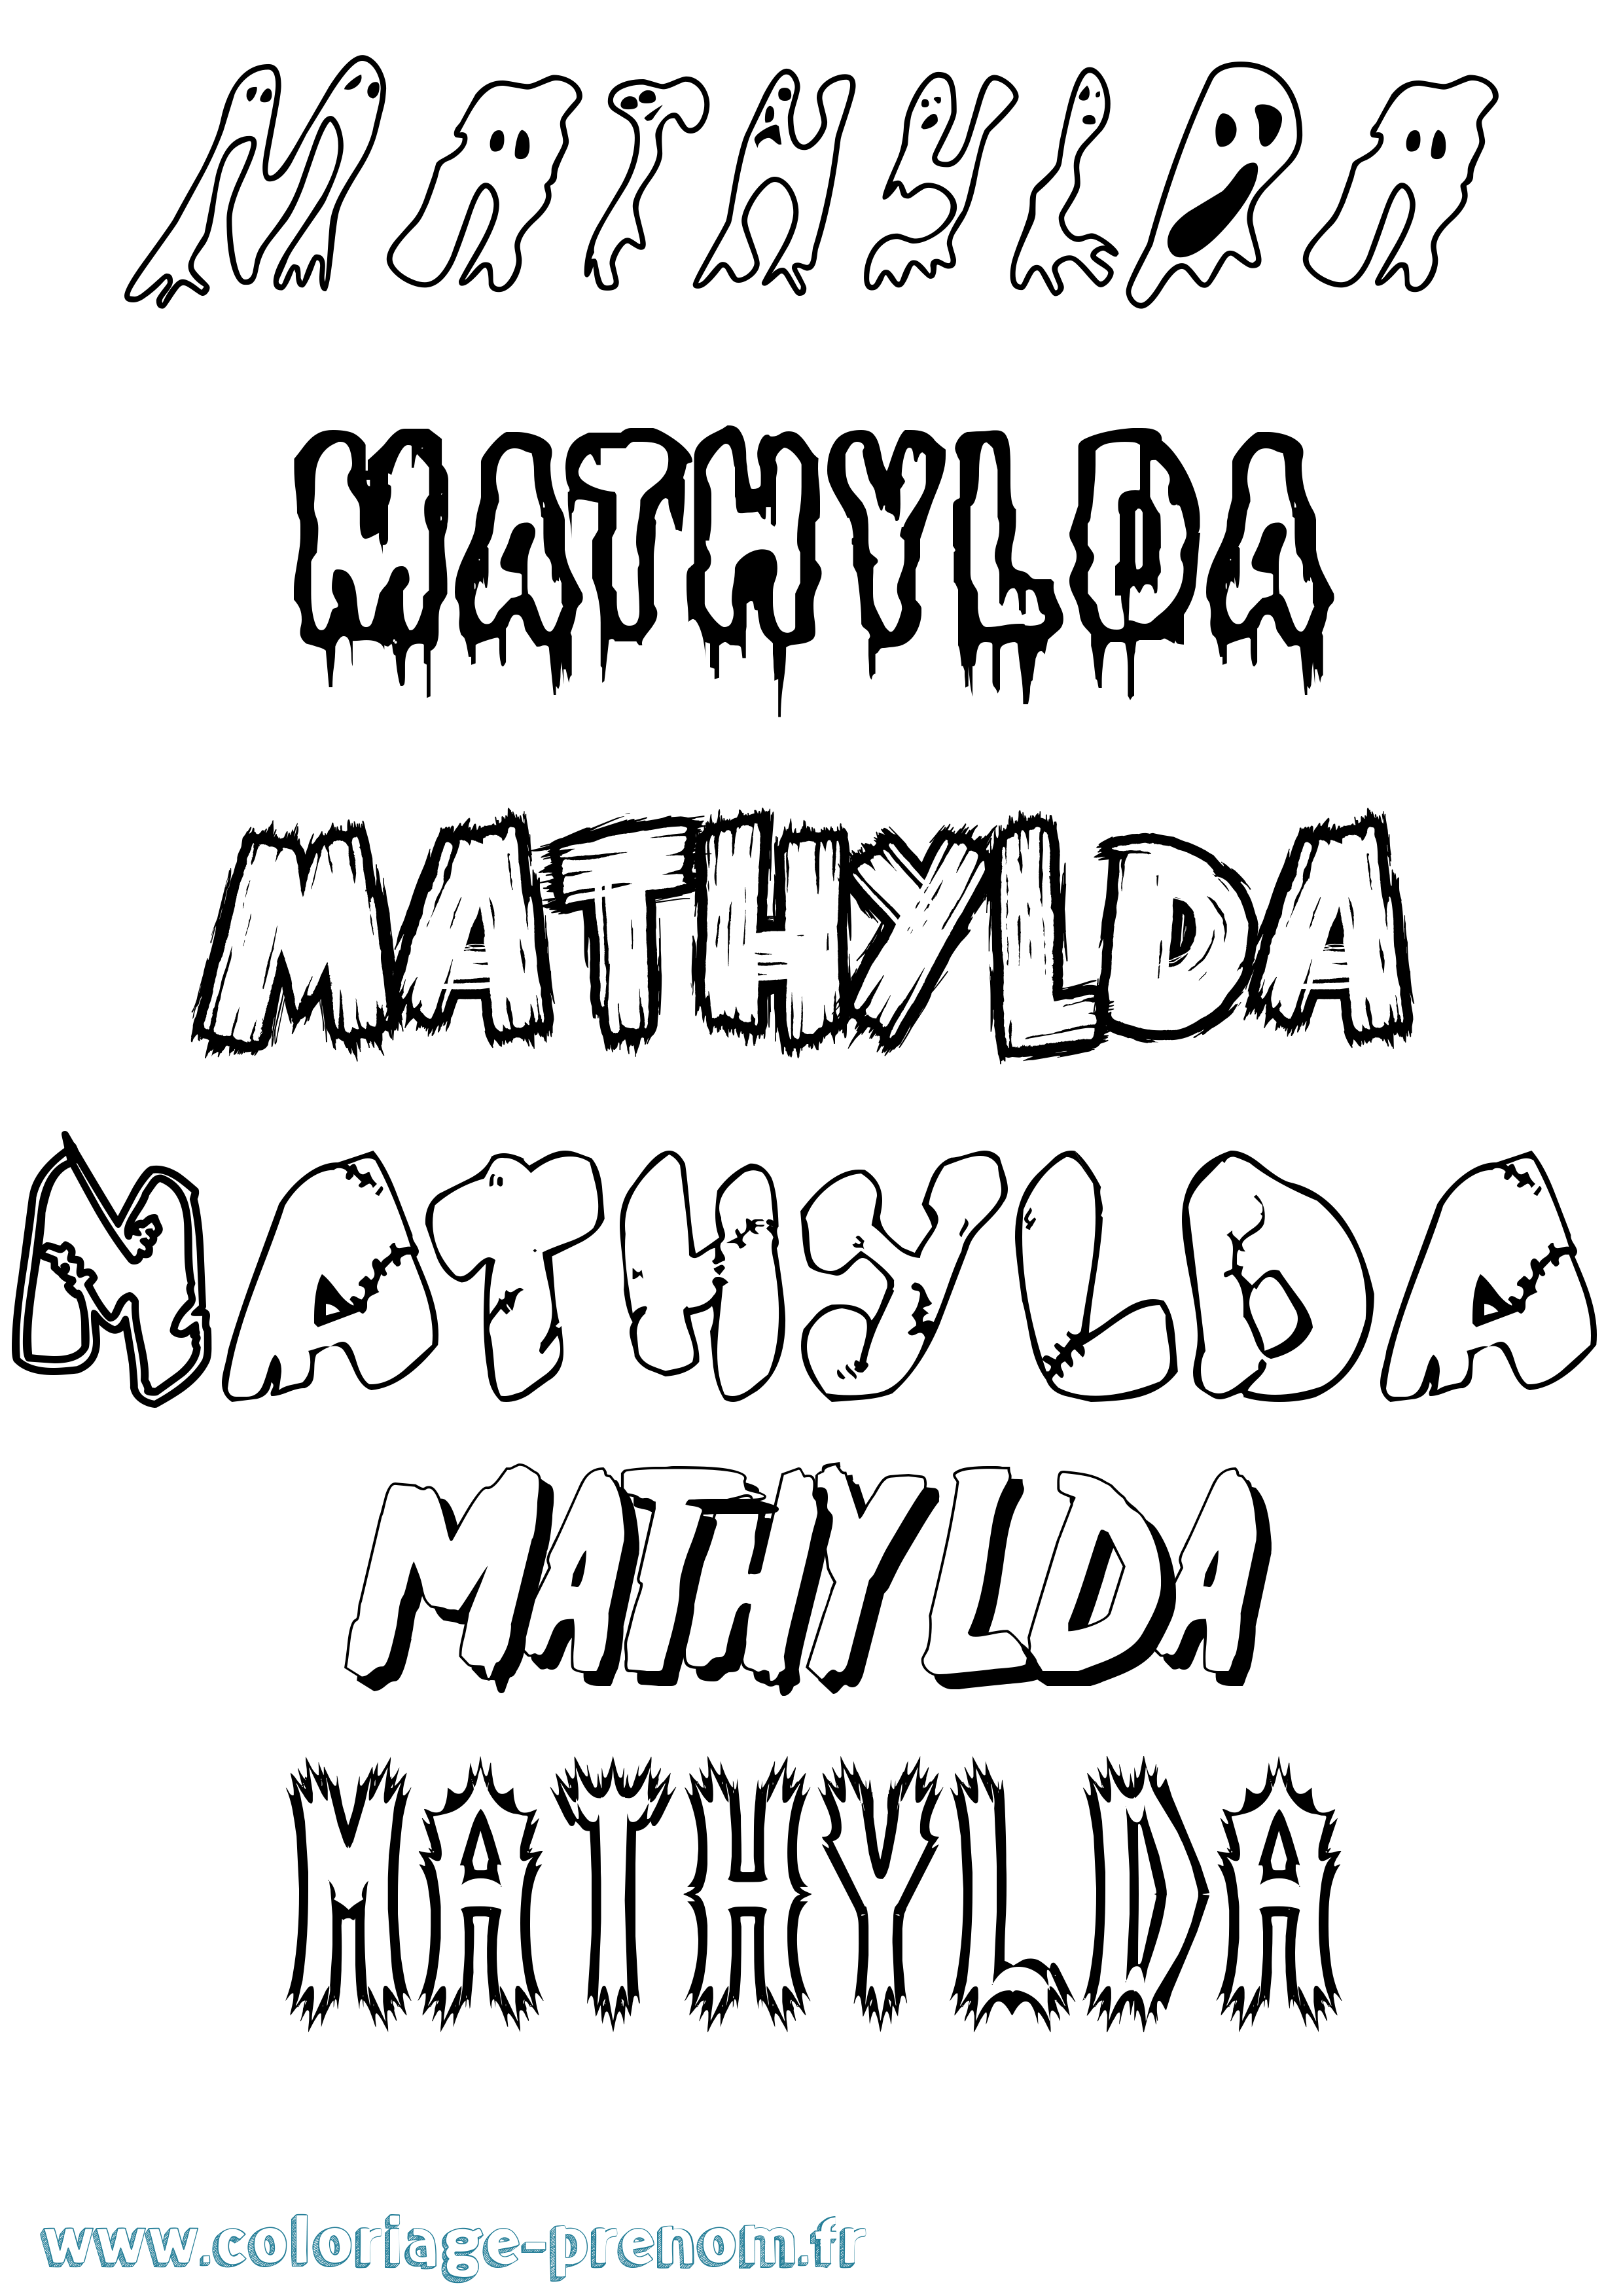 Coloriage prénom Mathylda Frisson